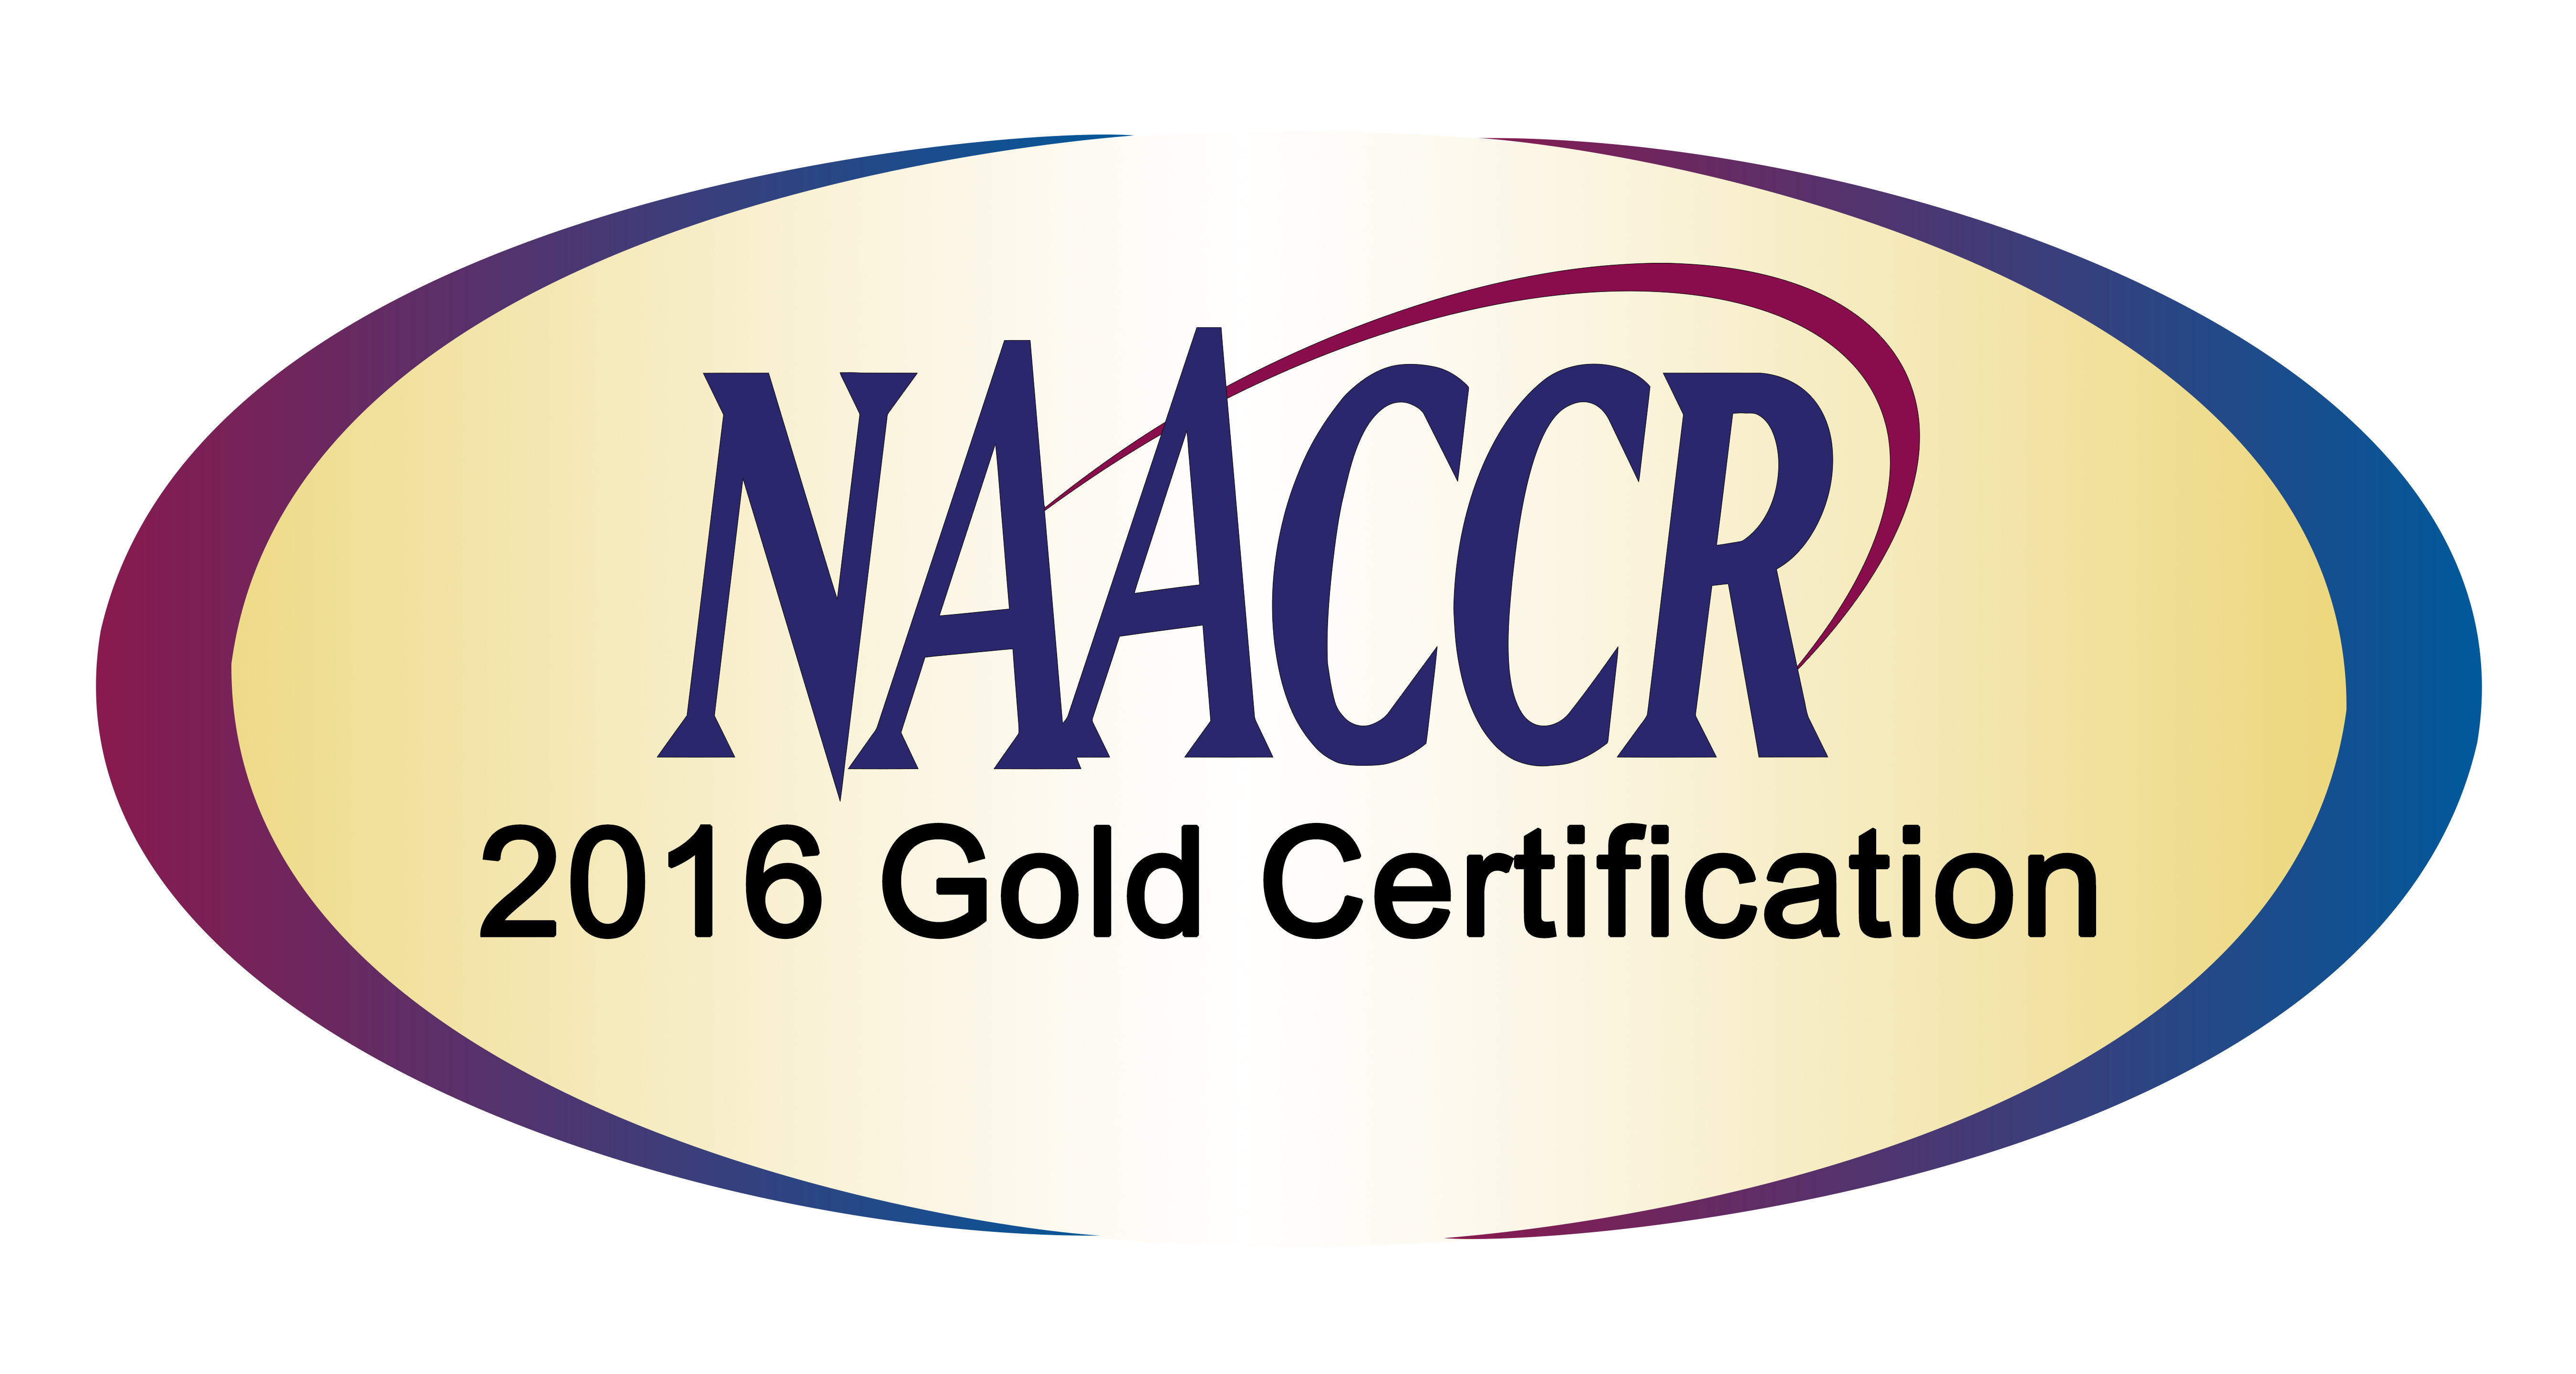 Naaccr Gold 2016